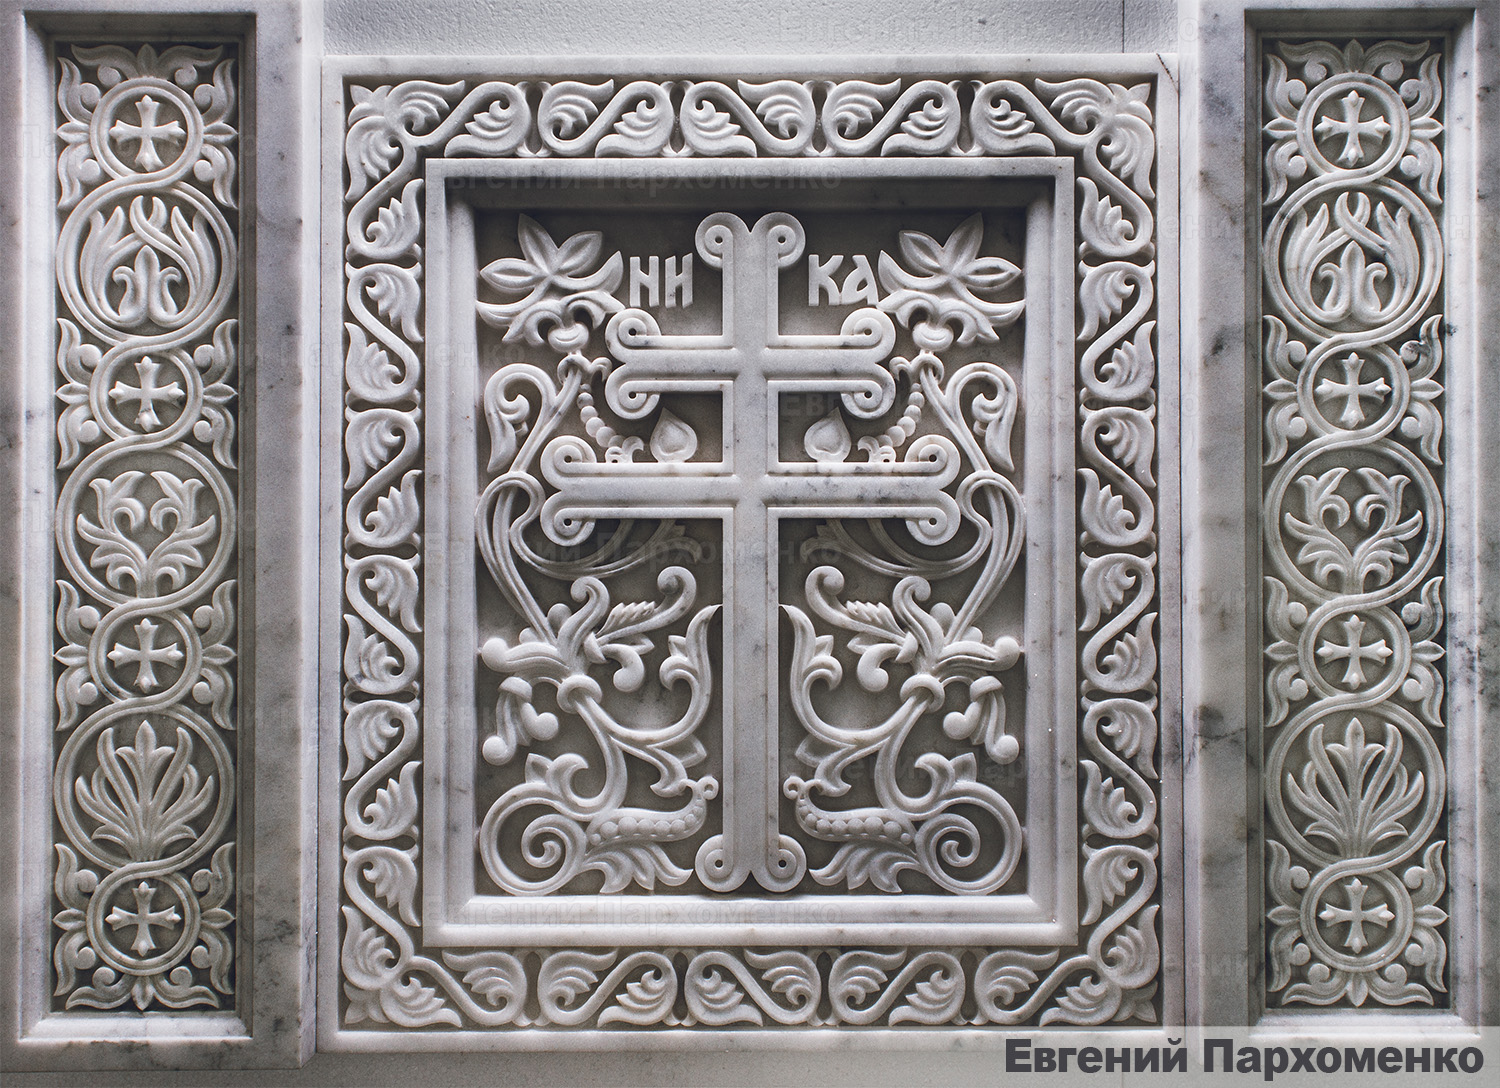 Резьба креста в византийском стиле с растительным орнаментом